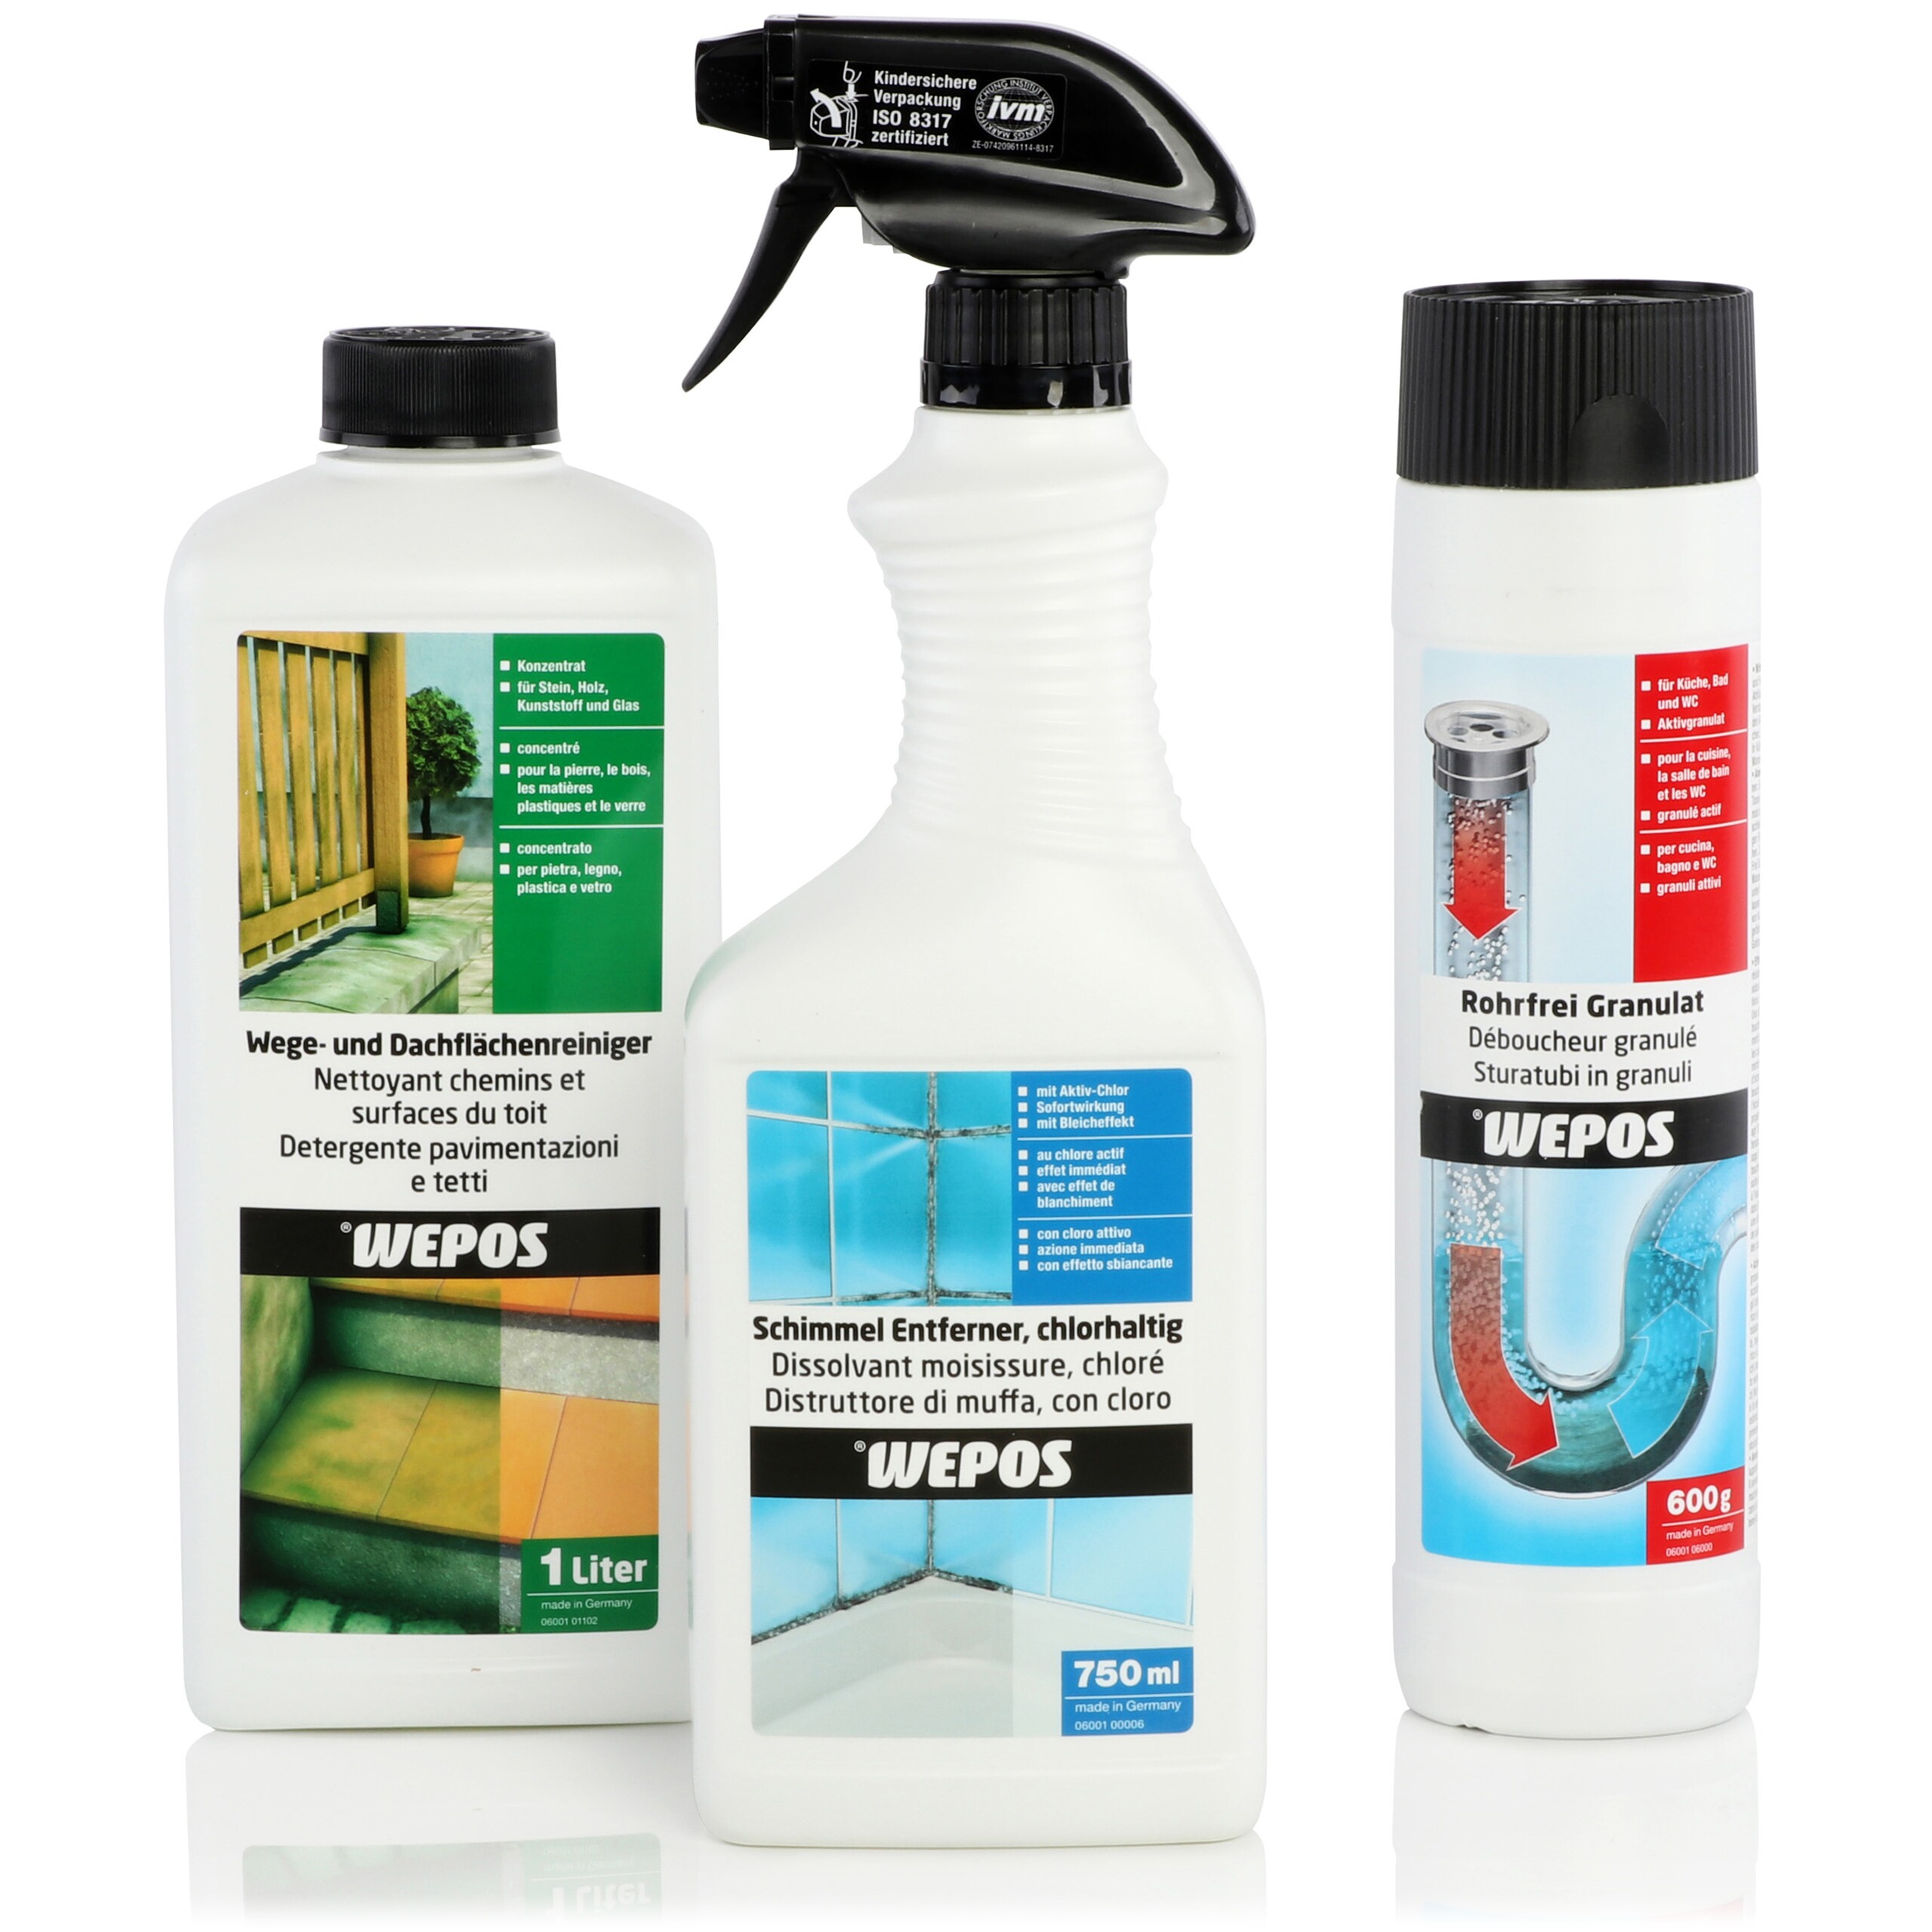 Trois produits de nettoyage de la marque Wepos, nettoyant pour surfaces de toitures, produit anti-moisissures, granulés déboucheur